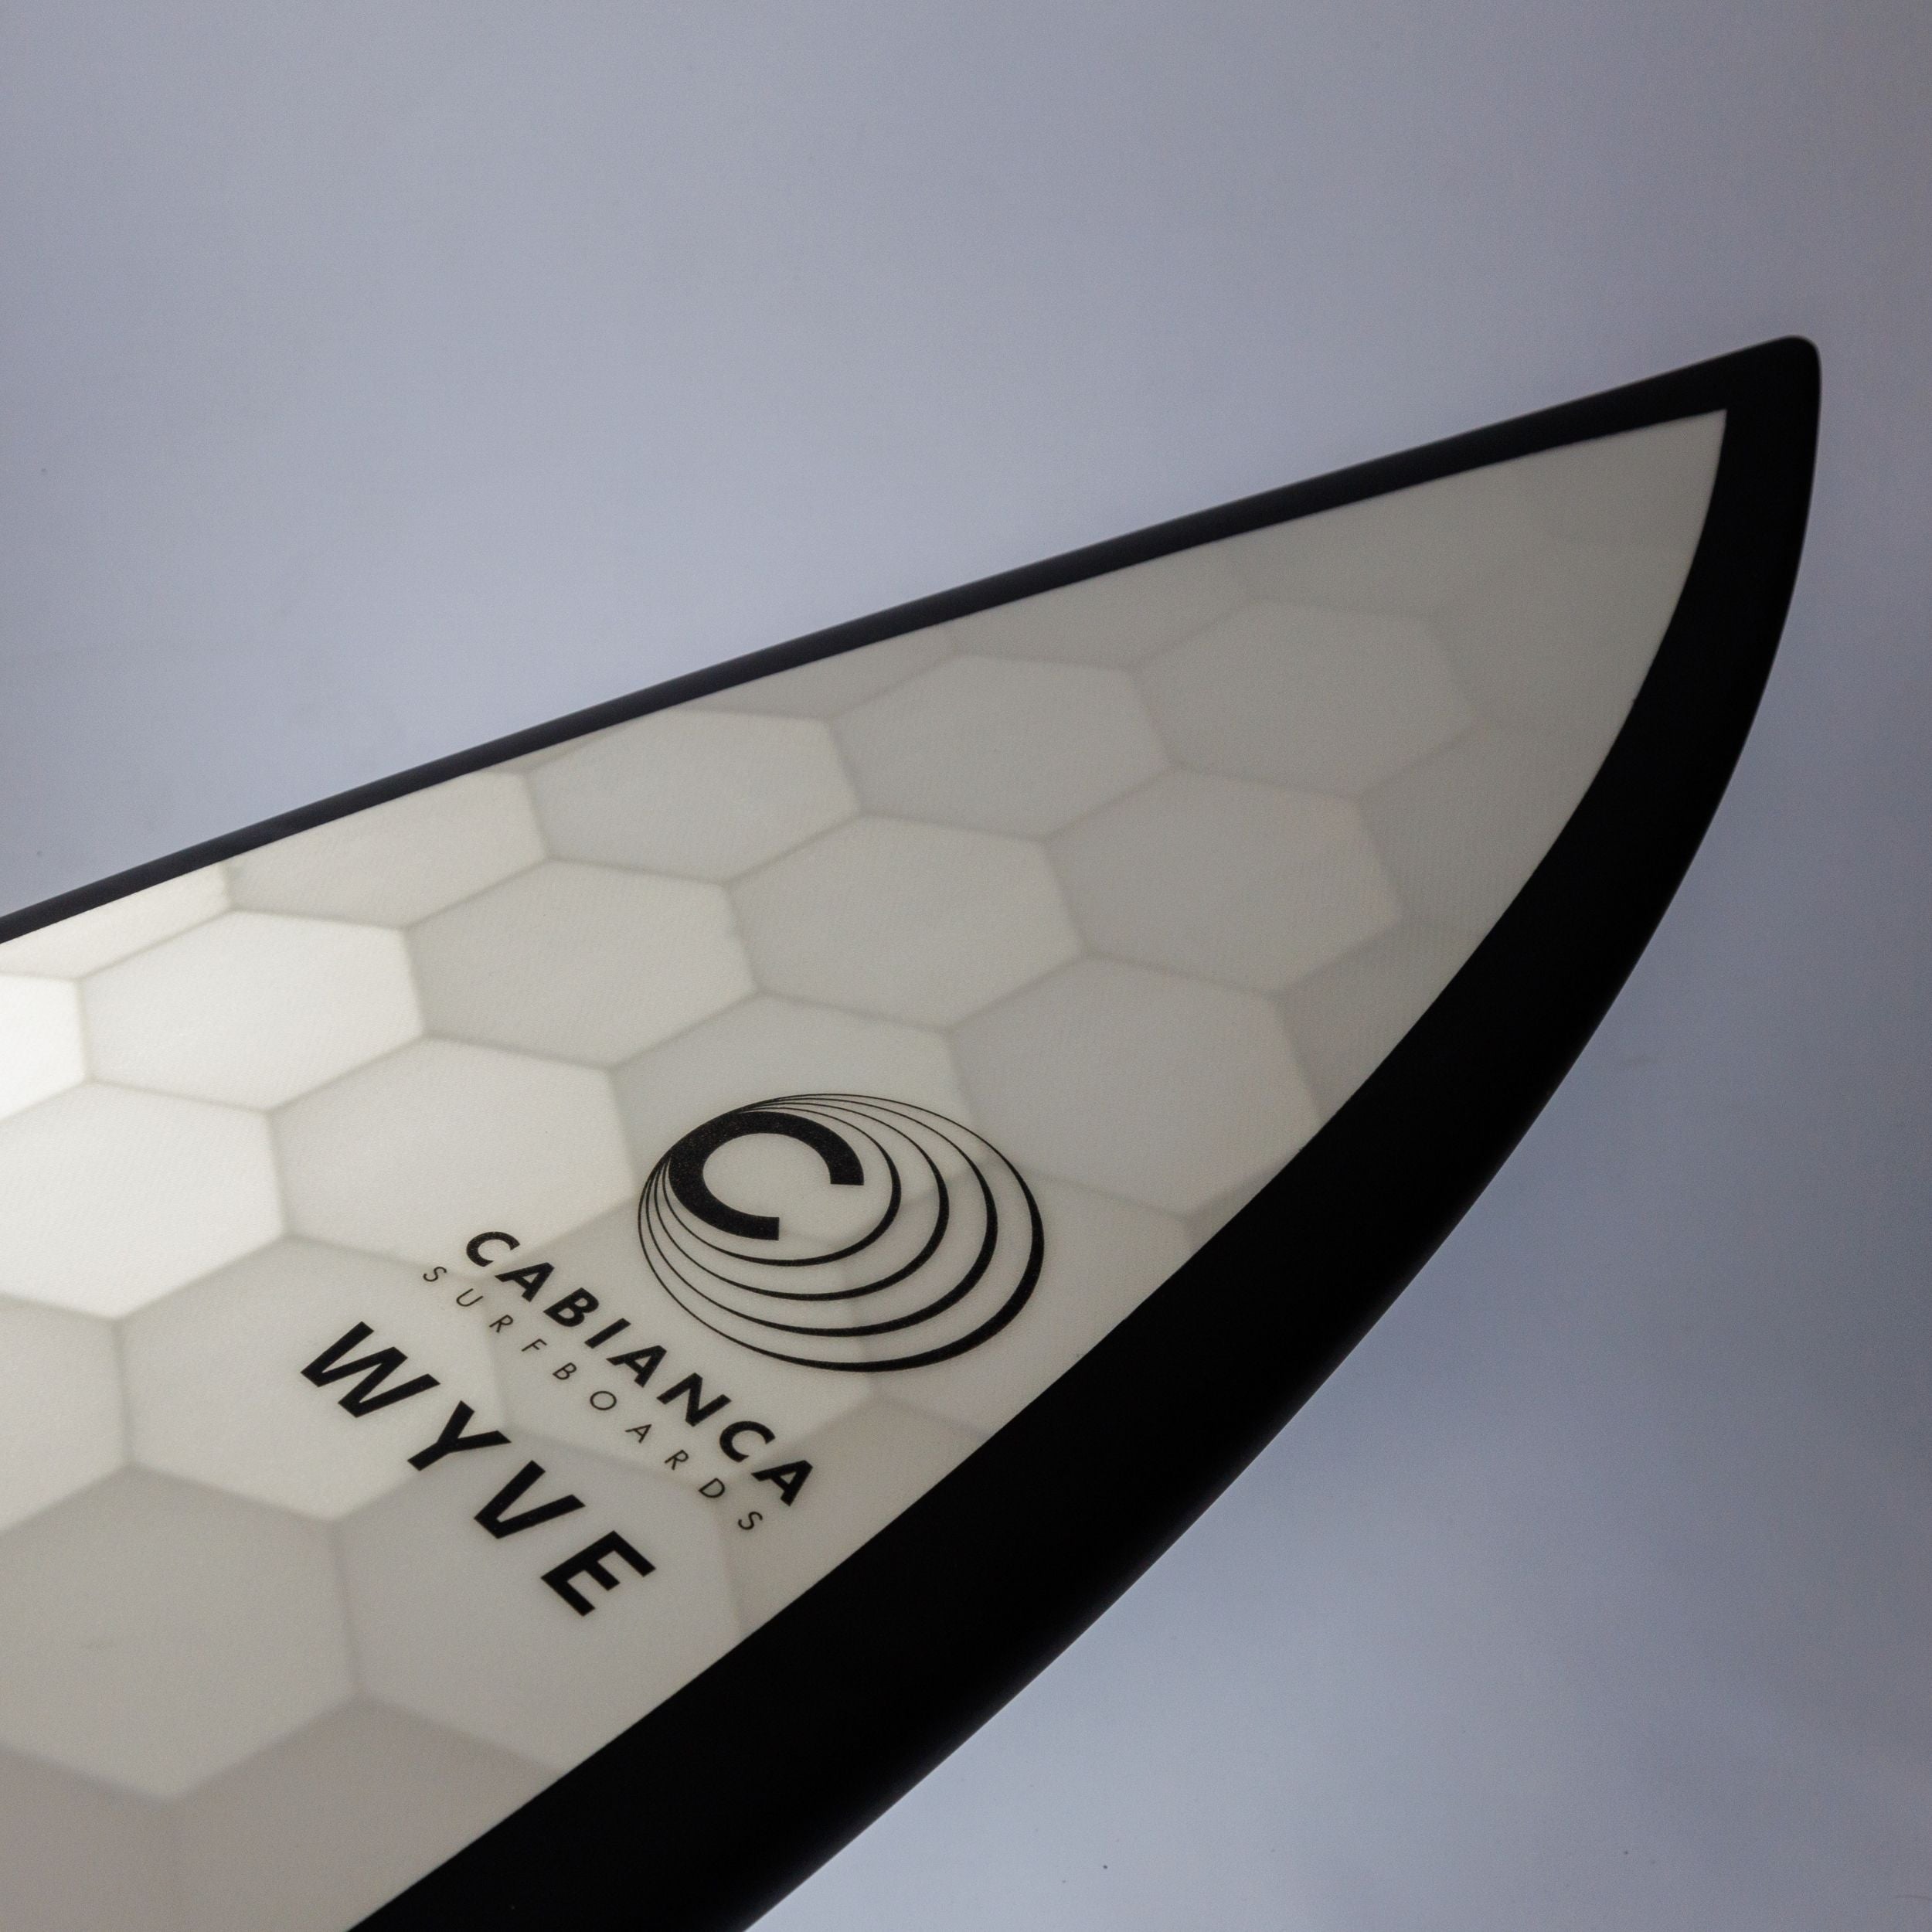 Nose d'une planche de surf Wyve eco conçue